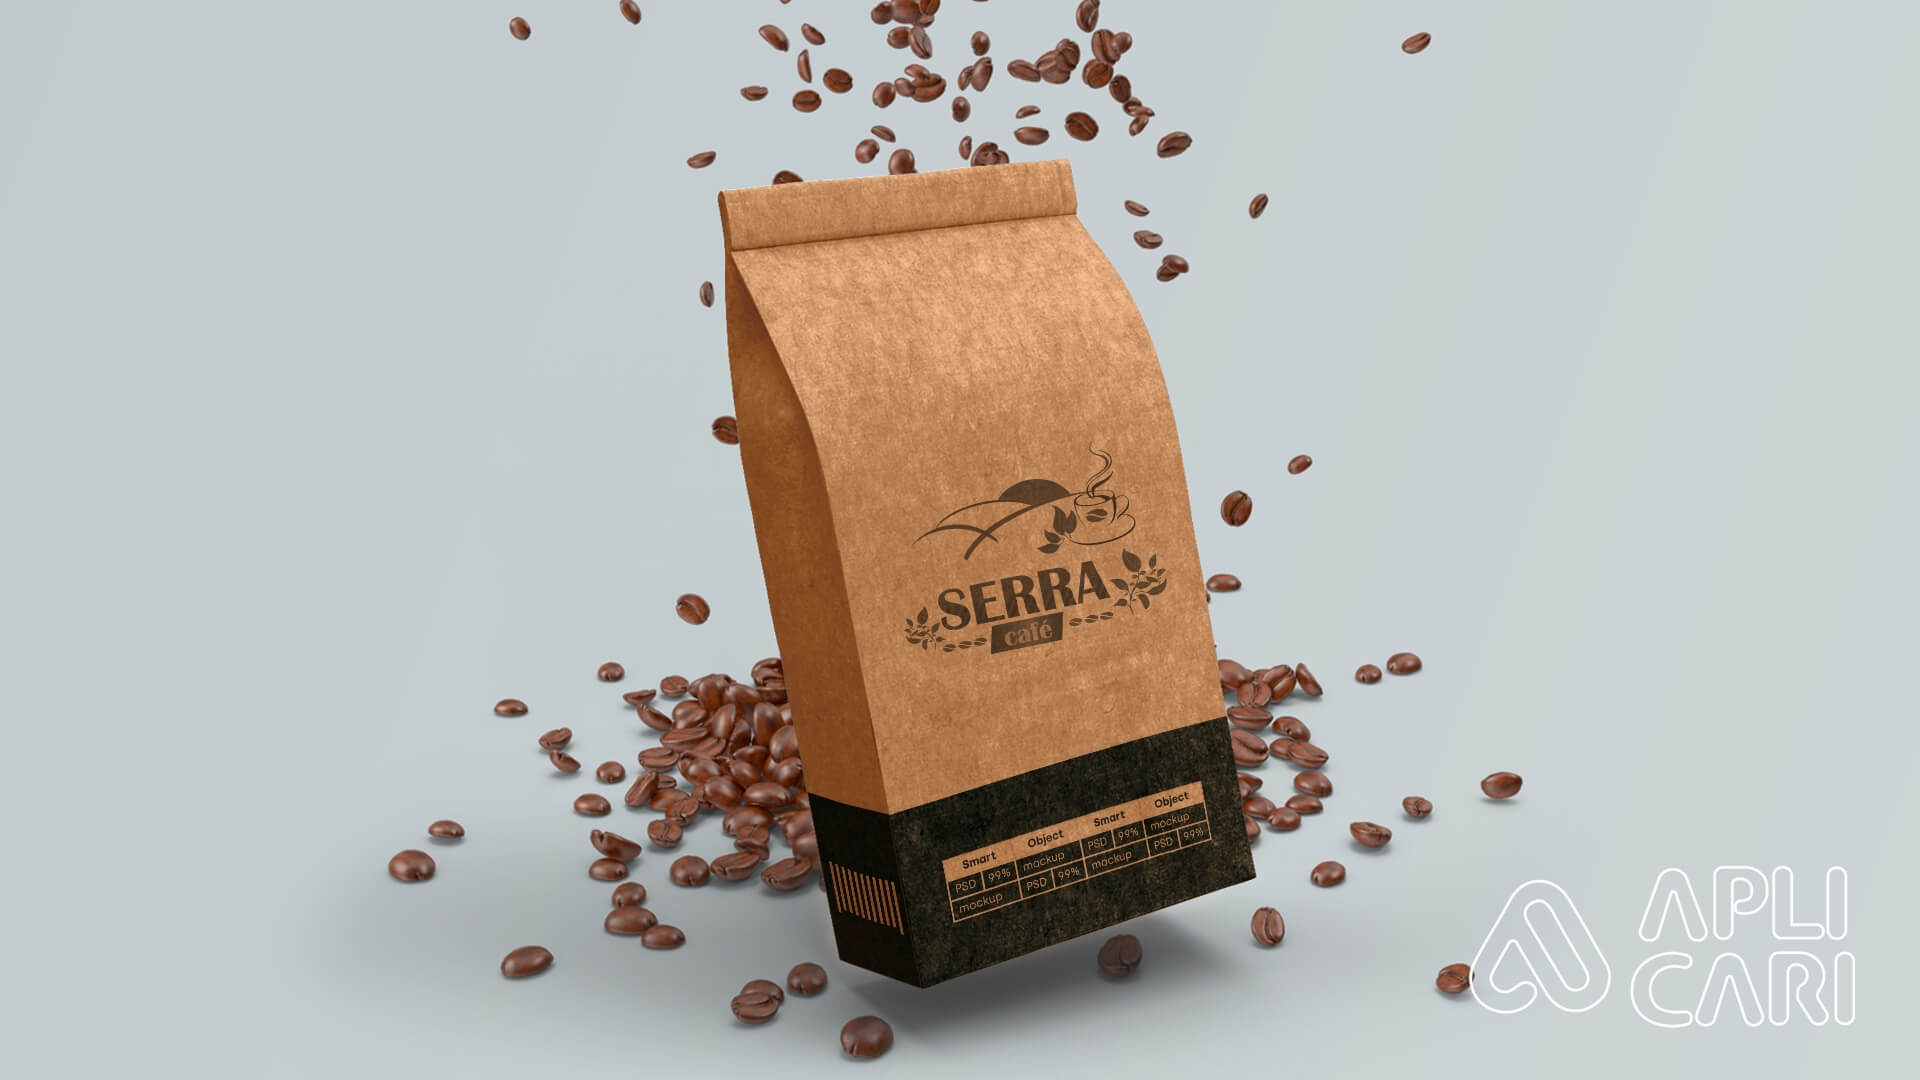 Serra Café